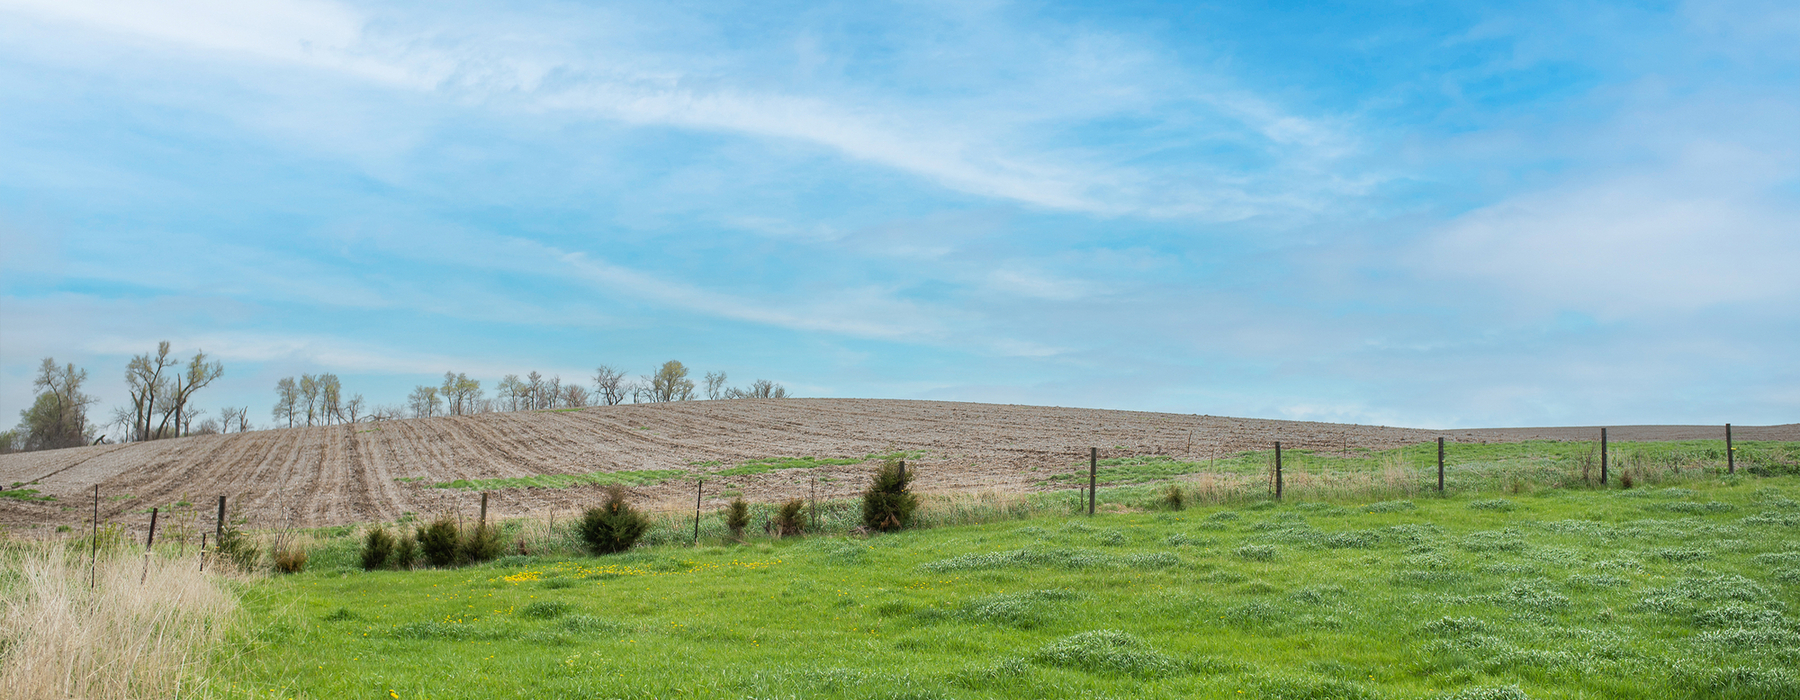 Cel blau, camp de cultiu en filera al fons amb una pastura verda en primer pla amb una tanca al mig